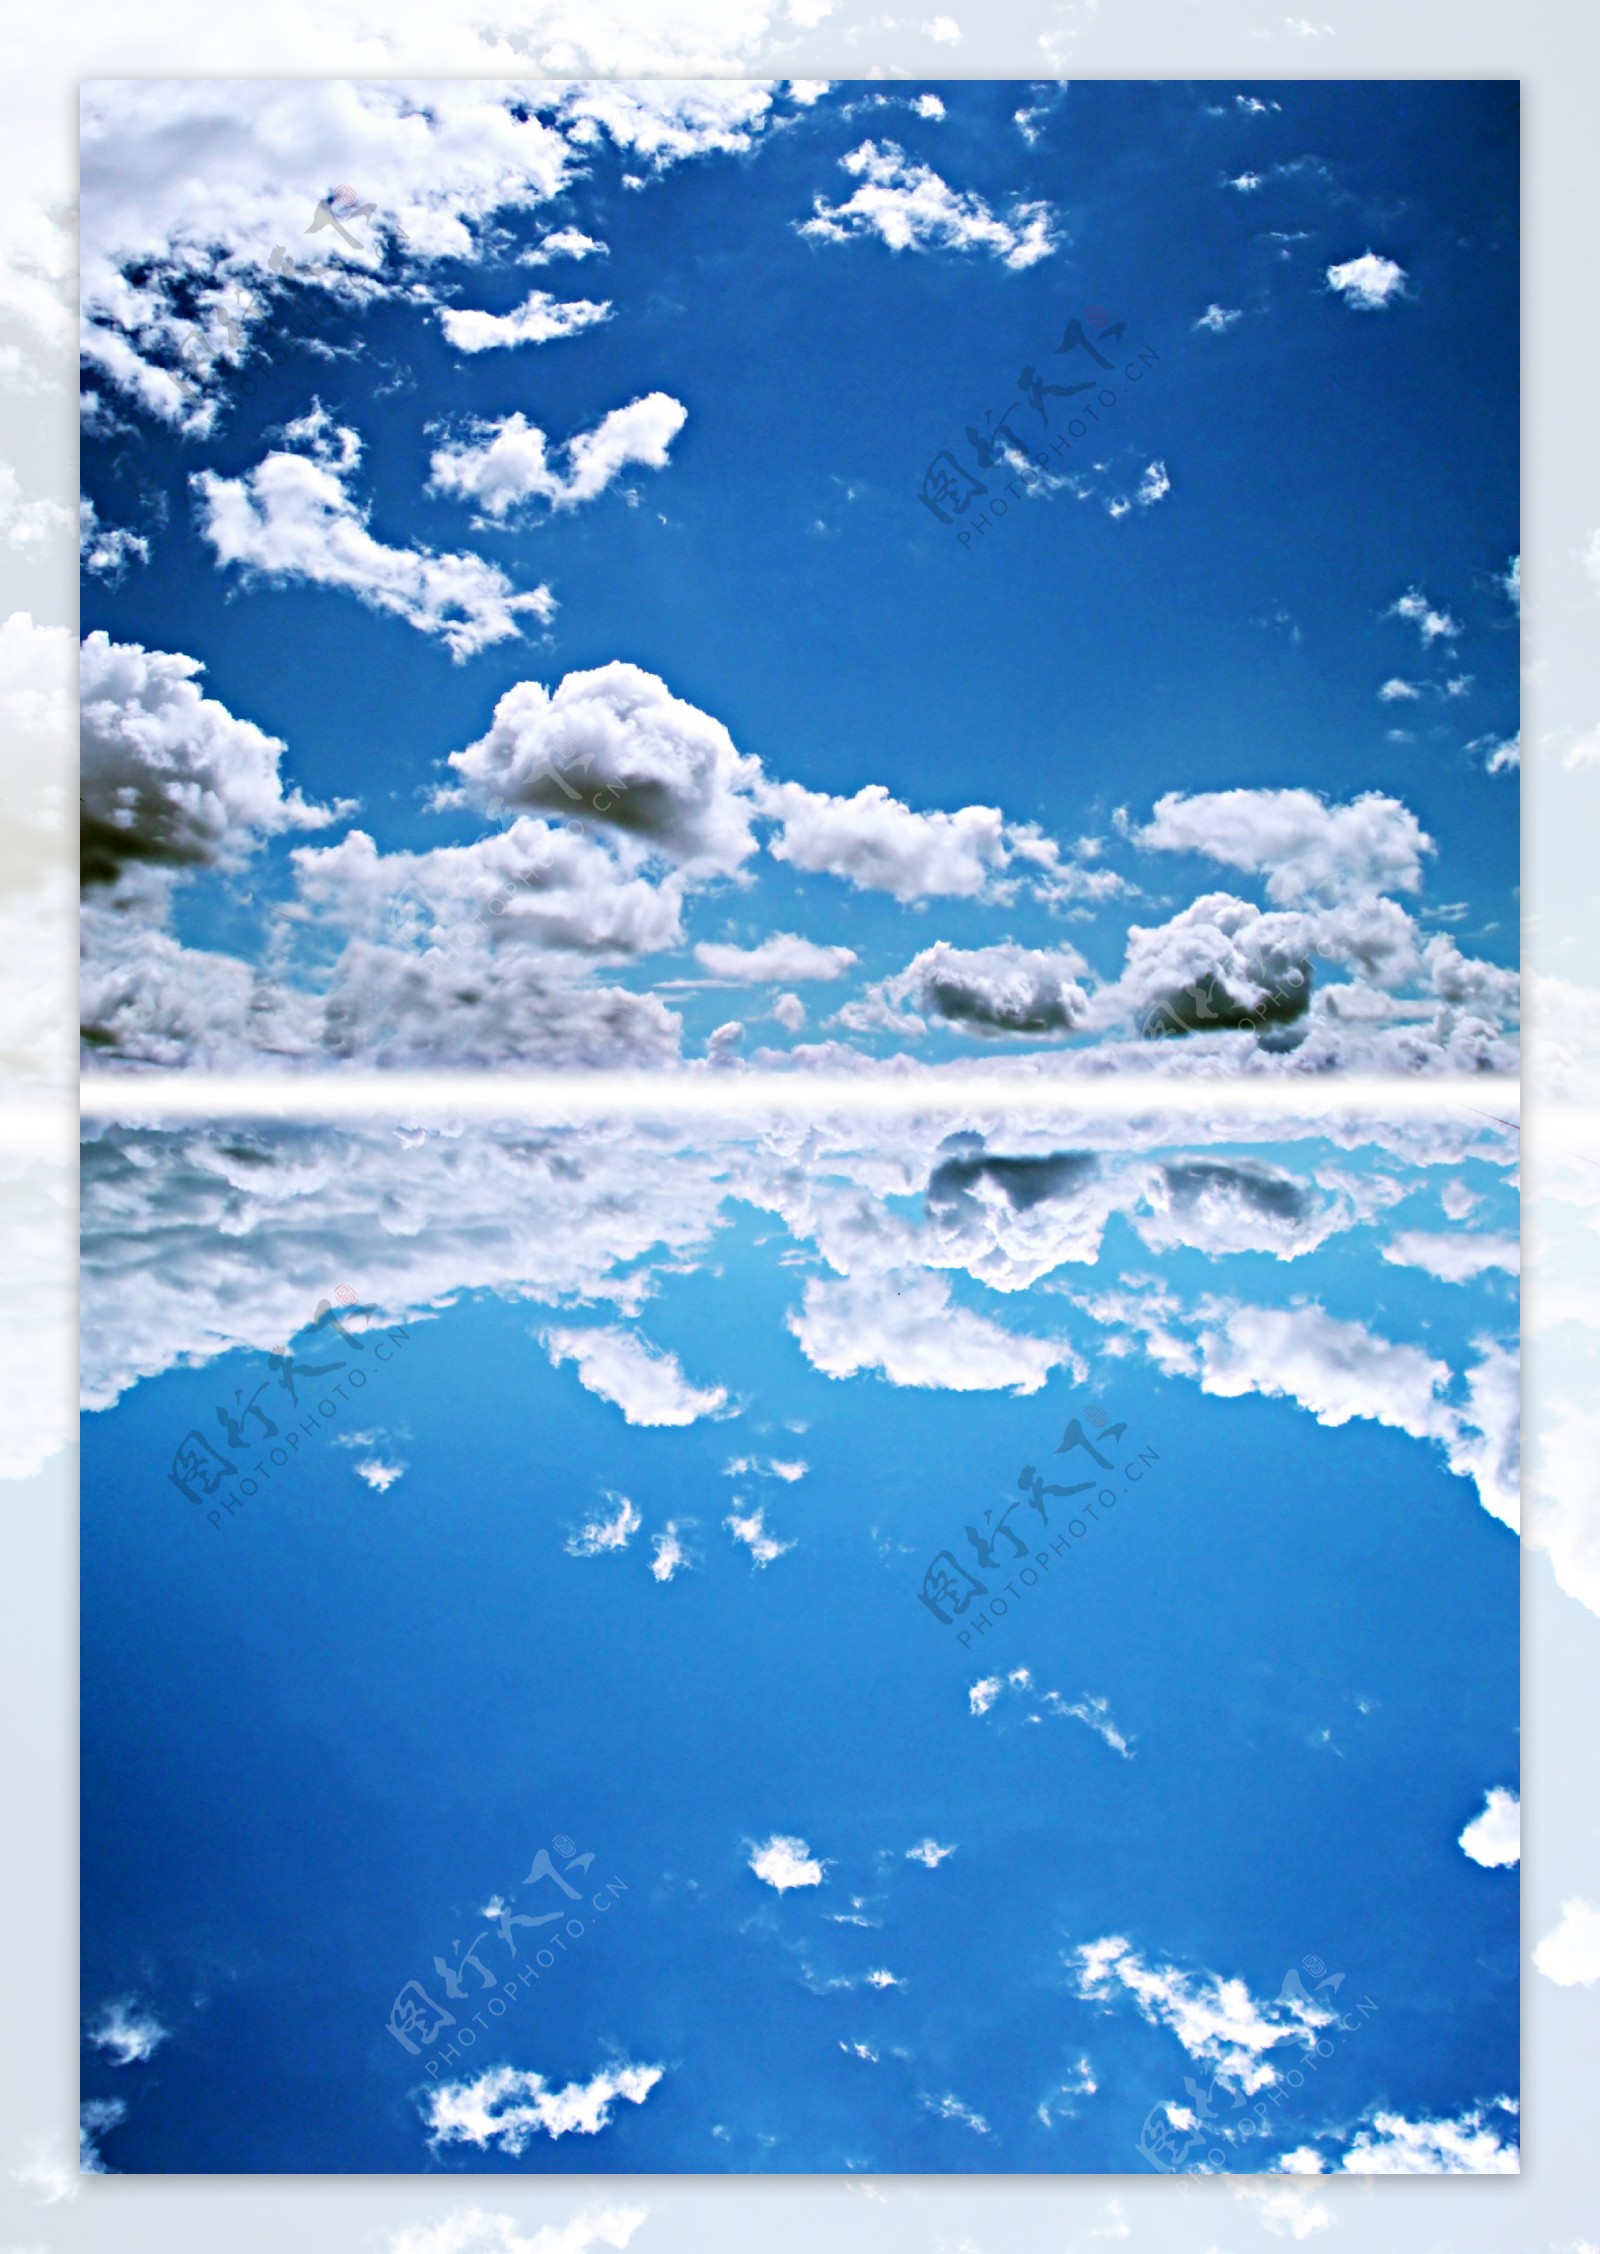 蓝天白云与倒影图片